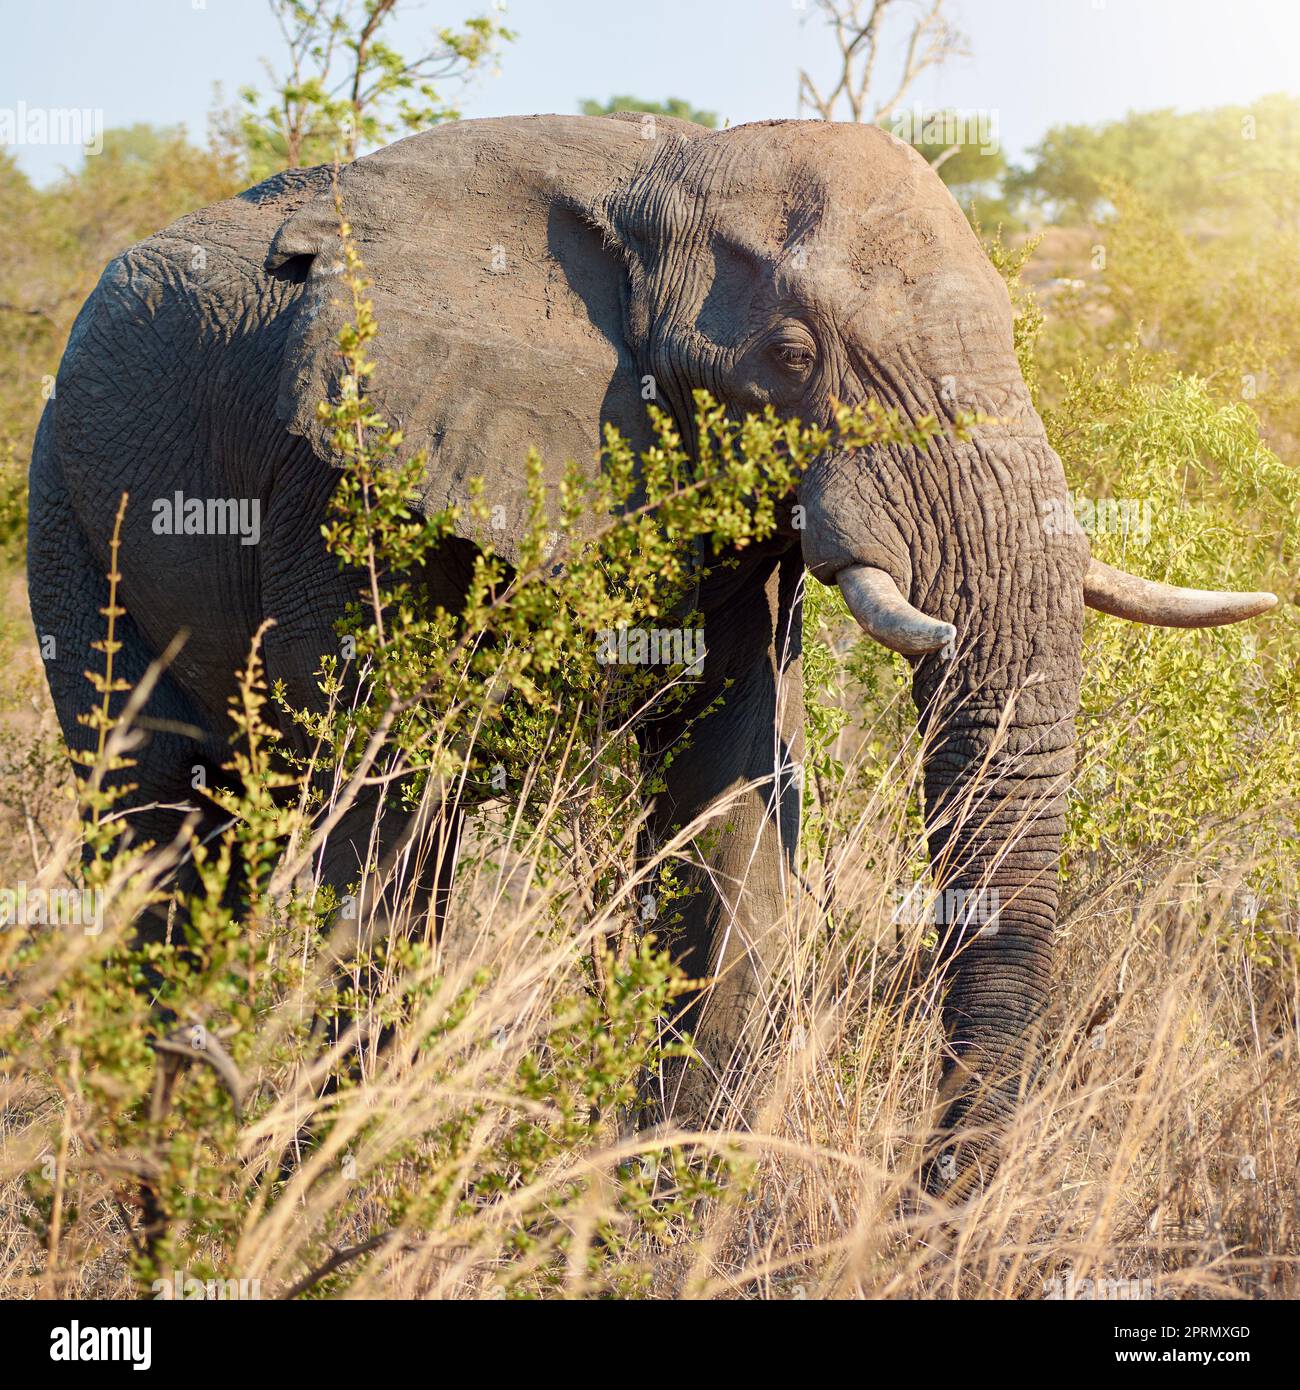 Essere grandi è uno stile di vita. Scatto completo di un elefante in natura. Foto Stock